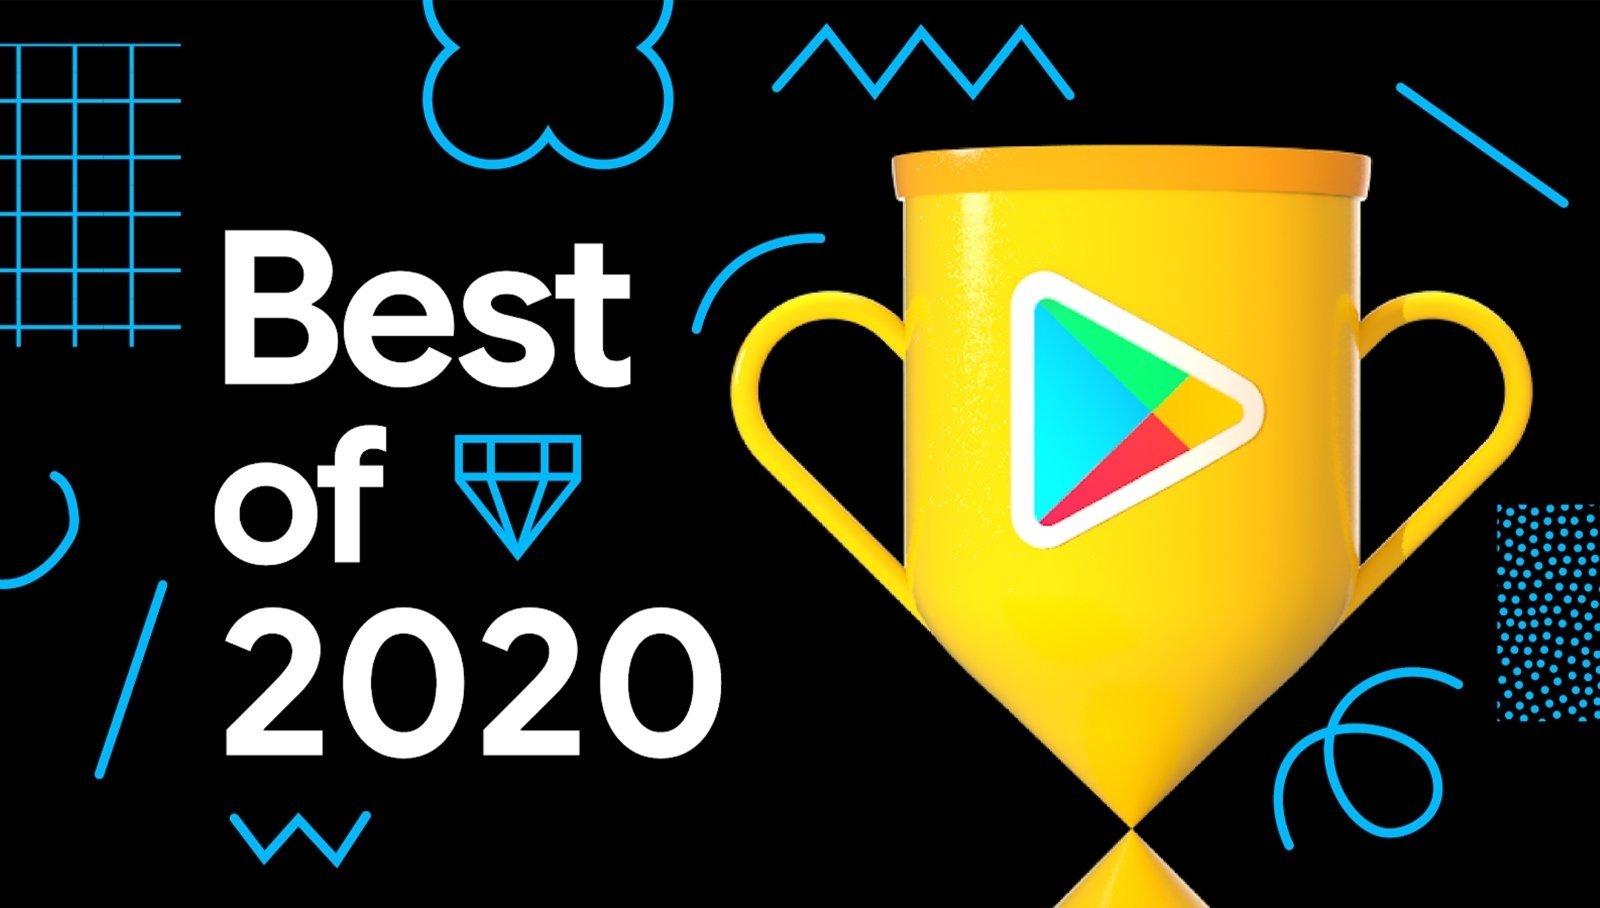 Estos son los mejores juegos y apps para Android de 2020